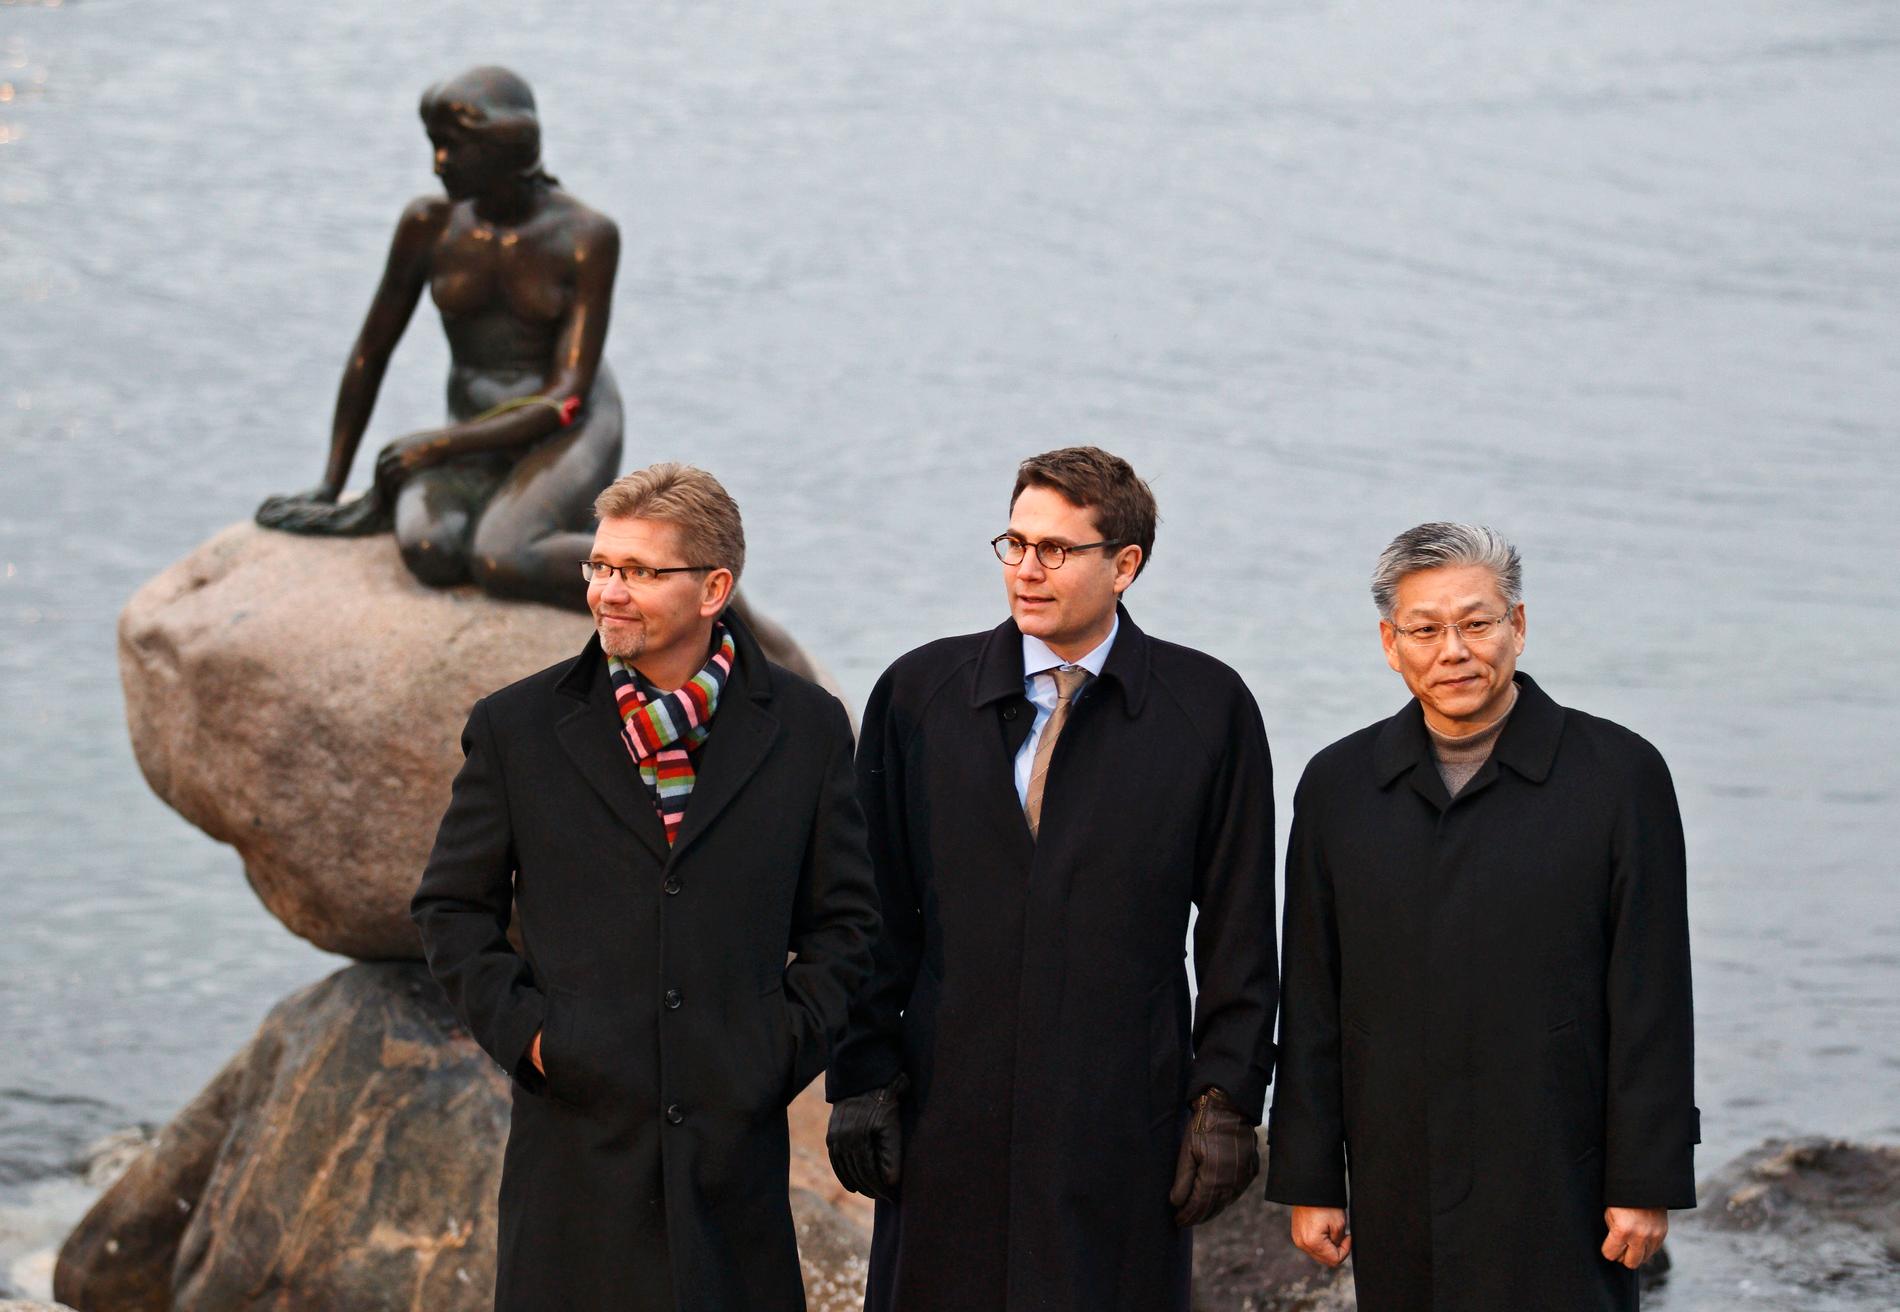 Danske borgmästaren Frank Jensen med den "lille havsfrue" i bakgrunden har stora planer för Öresund.